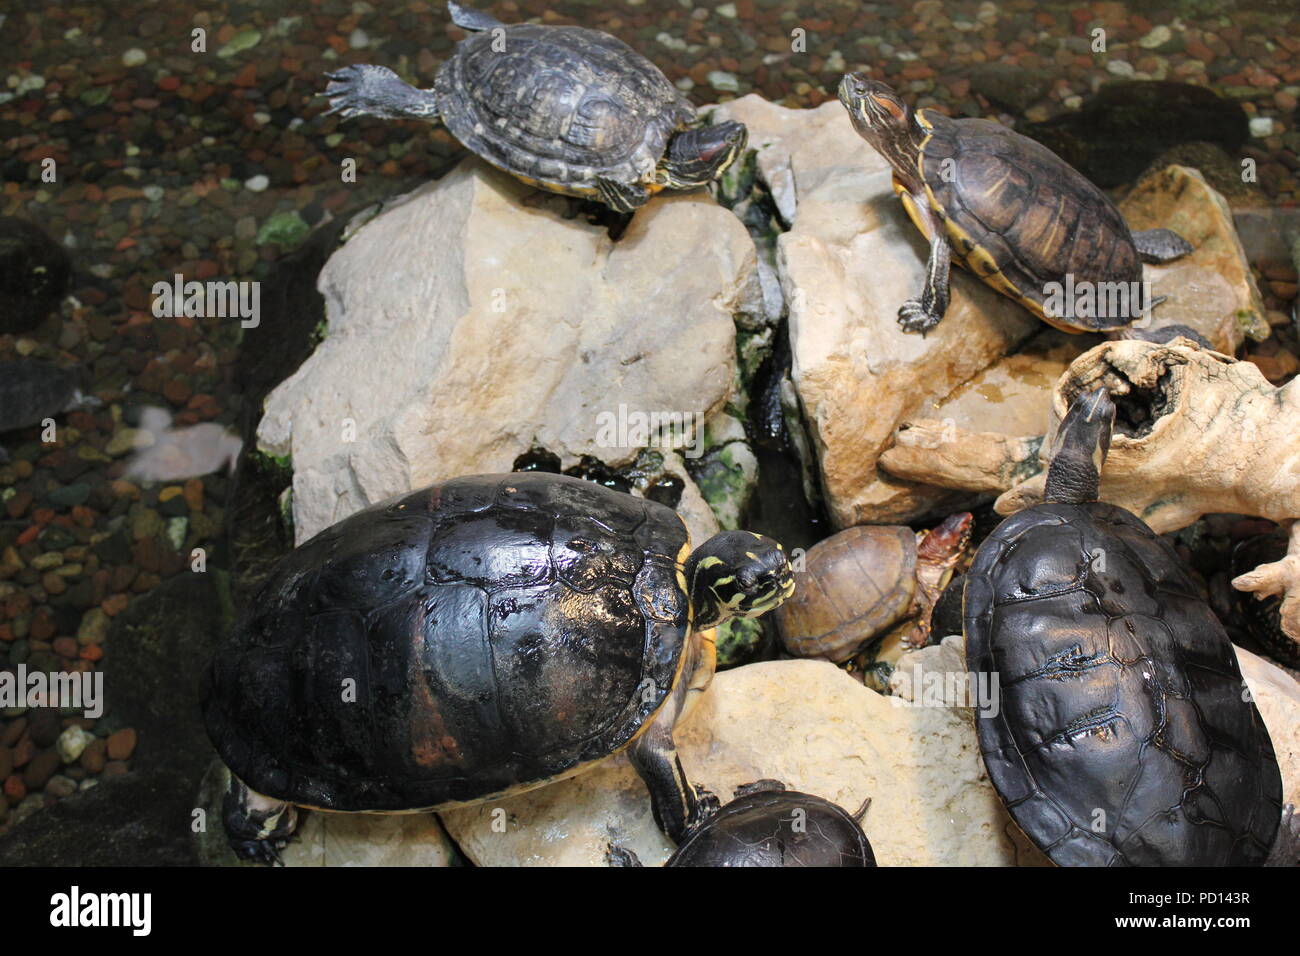 Tartarughe dipinte che si godono nel loro habitat naturale su rocce e pietre. Foto Stock